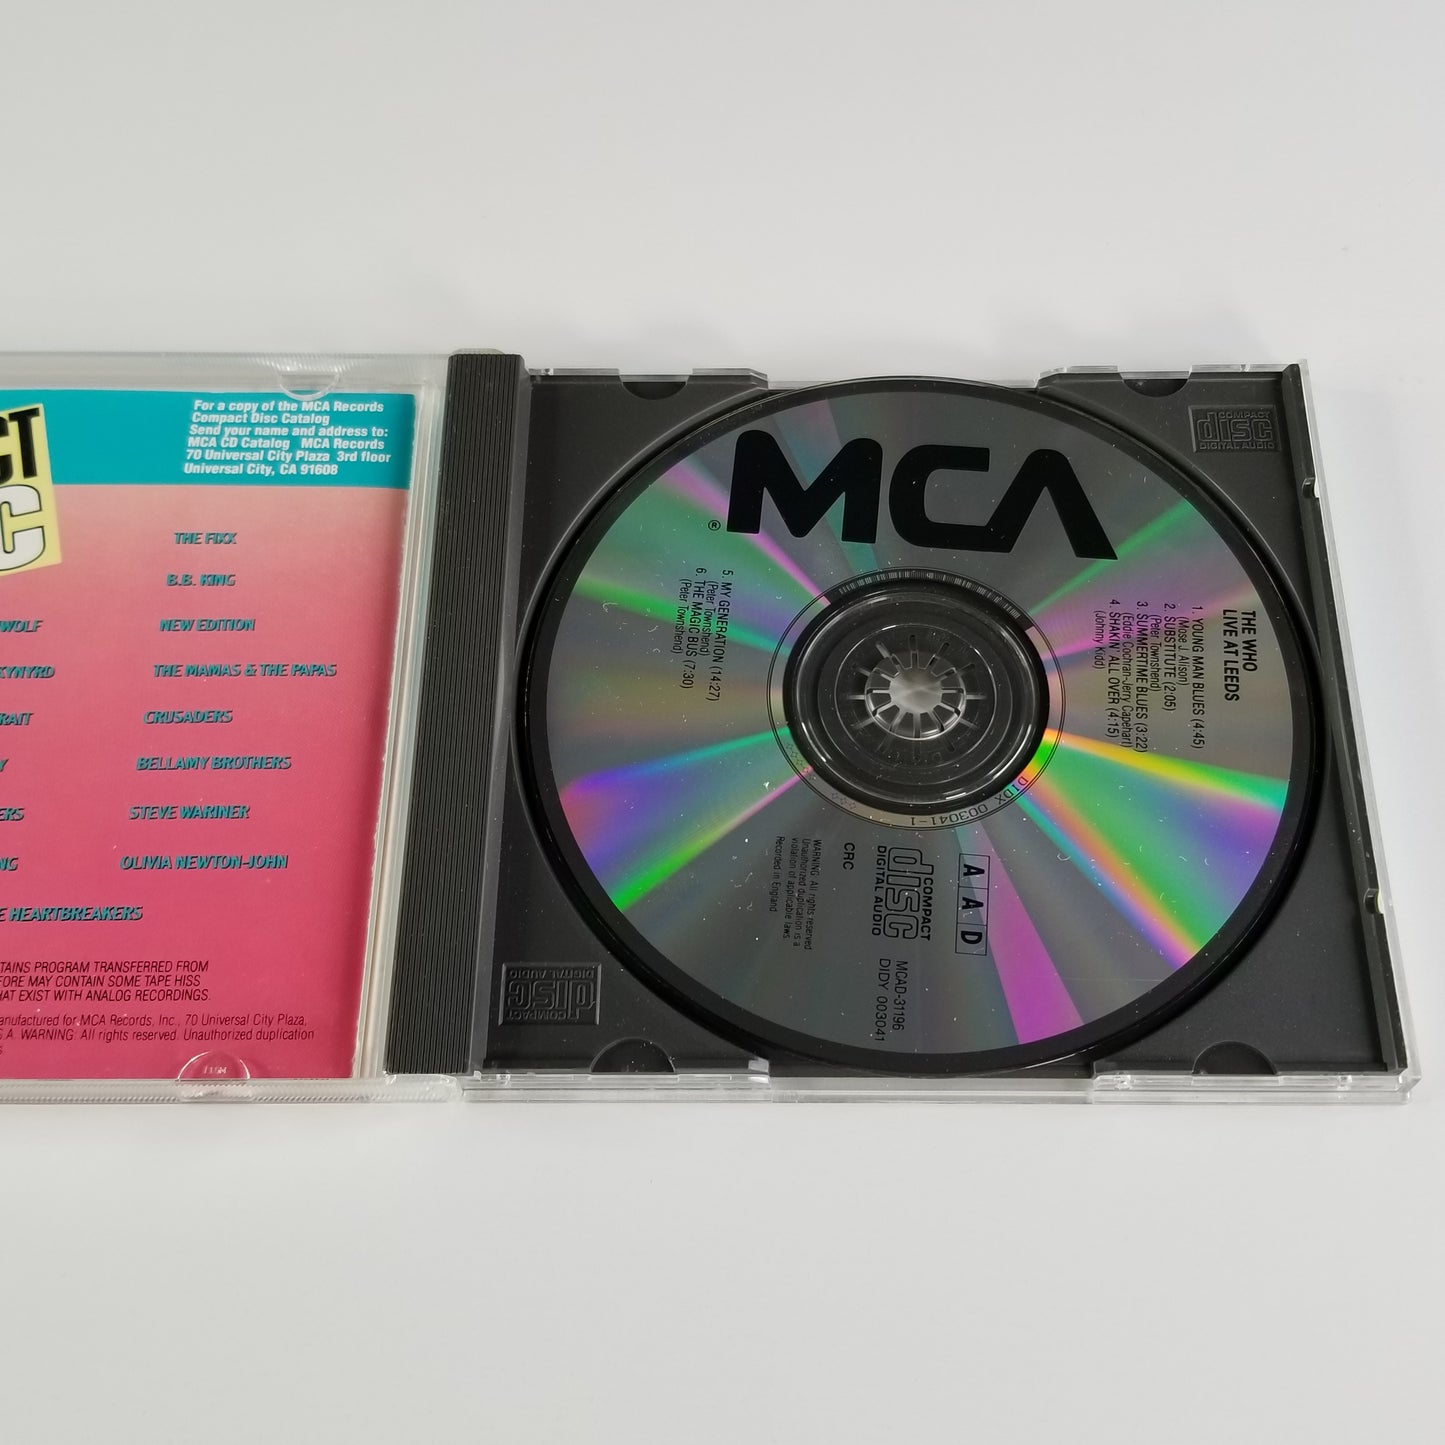 The Who - Live at Leeds (3 CD Lot) UDCD 755 MSFL MCAD - 31196 MCAD-11215